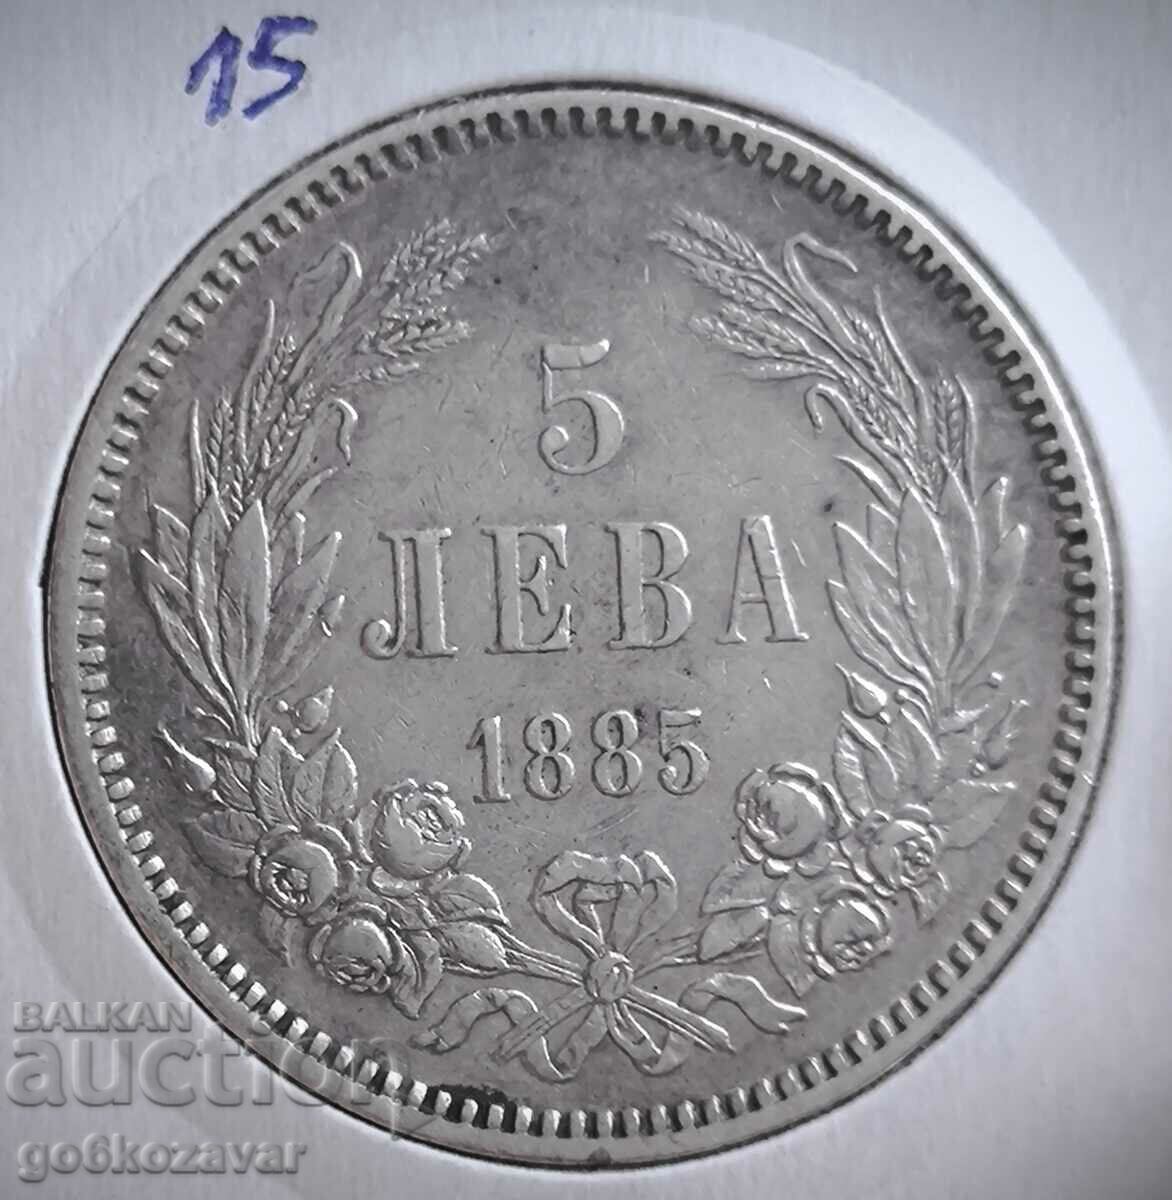 Bulgaria 5 BGN 1885 Silver! Rare! Collection!